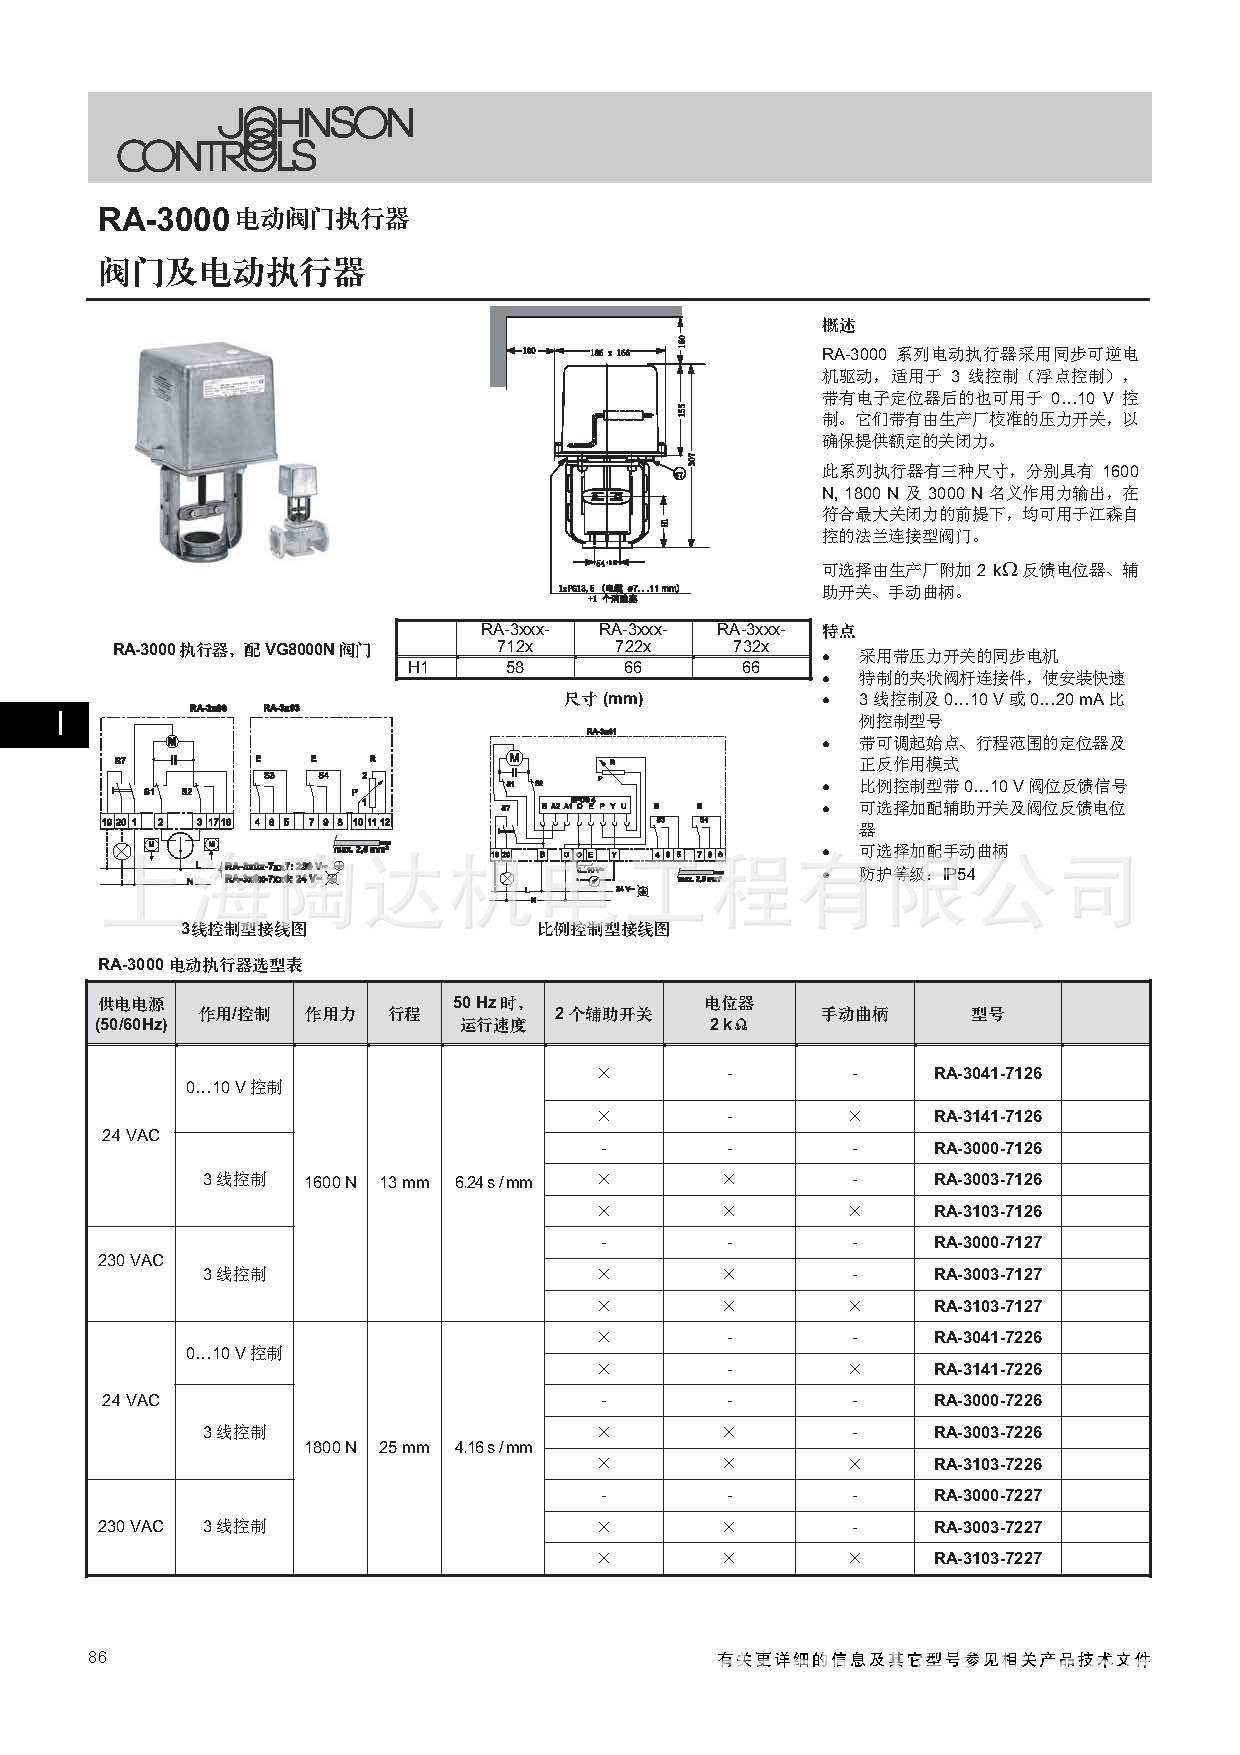 原装正品 RA-3100-7226 RA-3041-7226 江森电动调节阀执行器示例图2